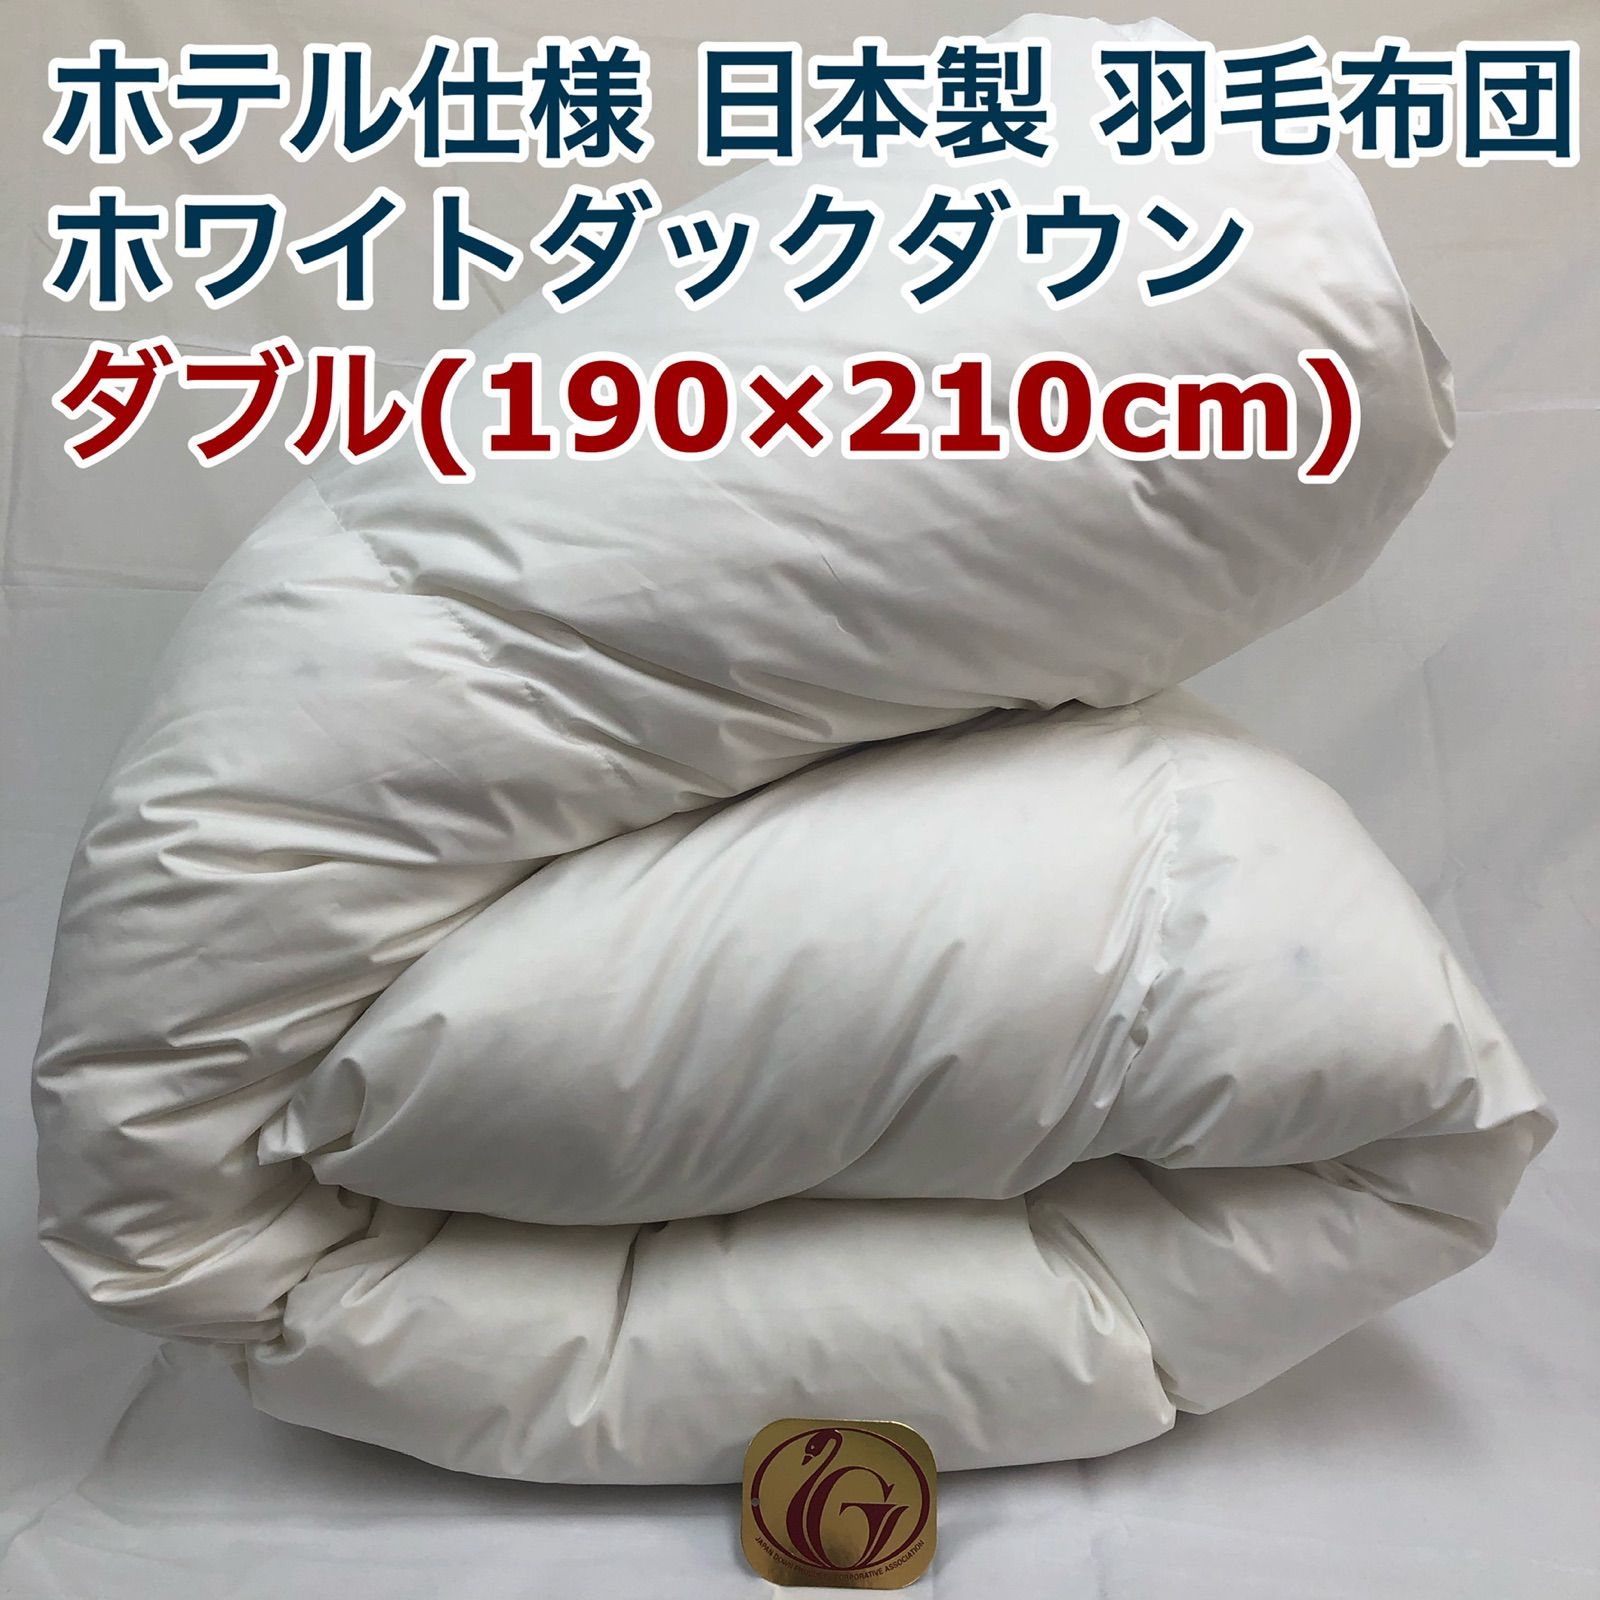 羽毛布団 ダブル ニューゴールド 白色 日本製 190×210cm - 布団・毛布